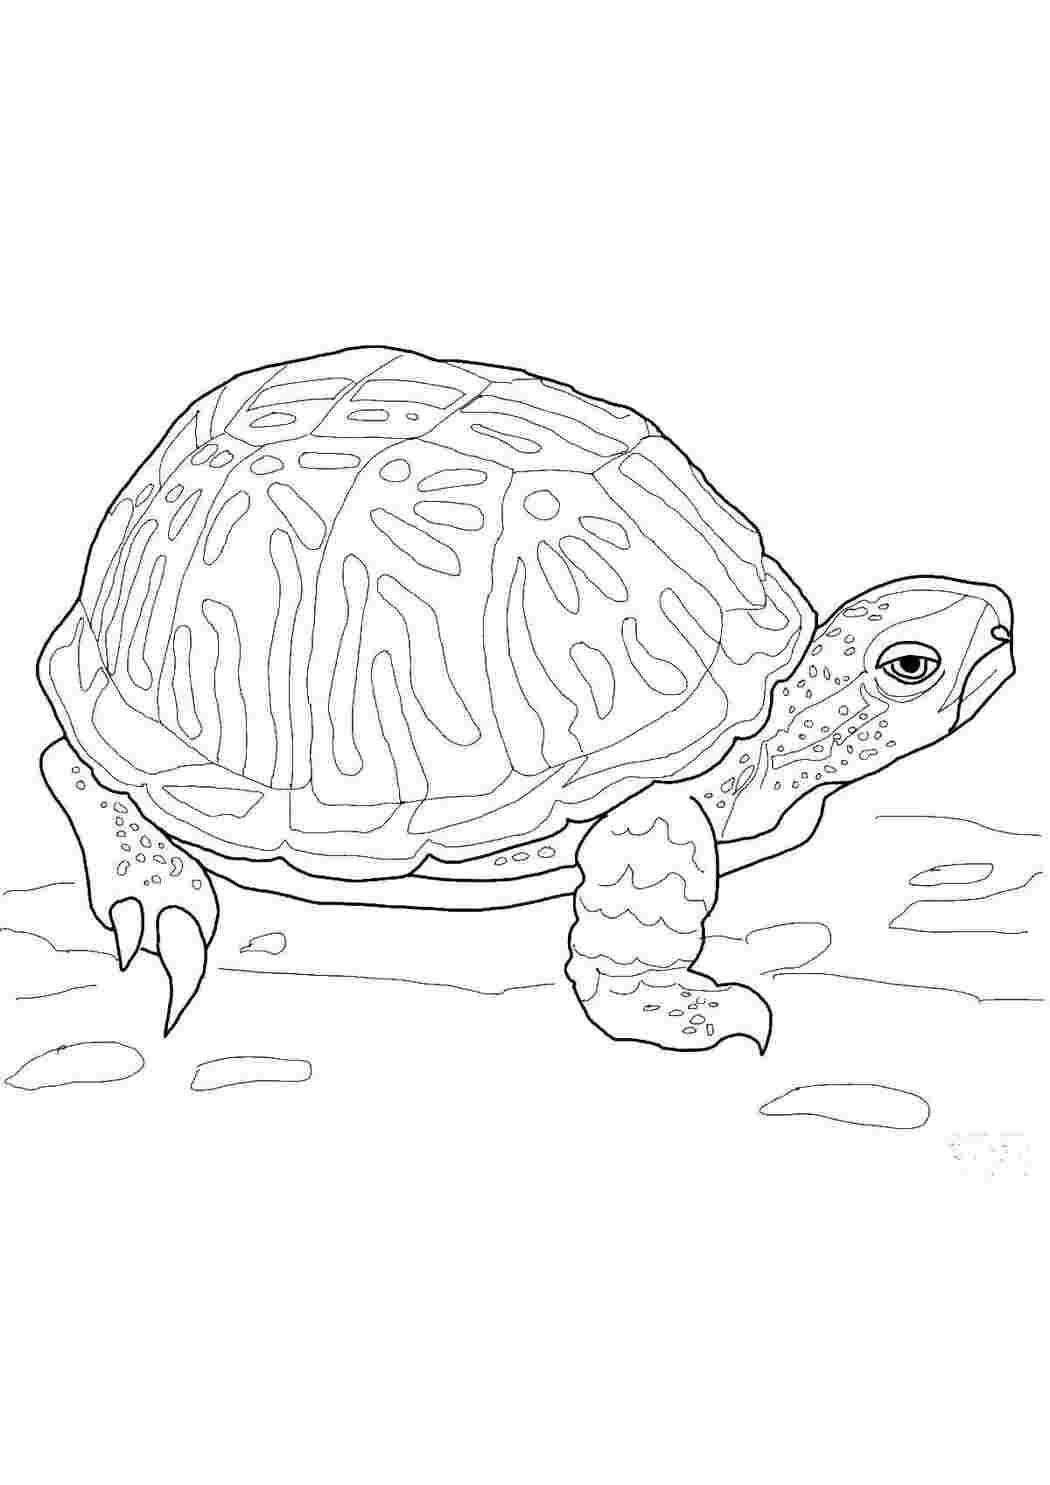 Раскраска морская черепашка для детей распечатать